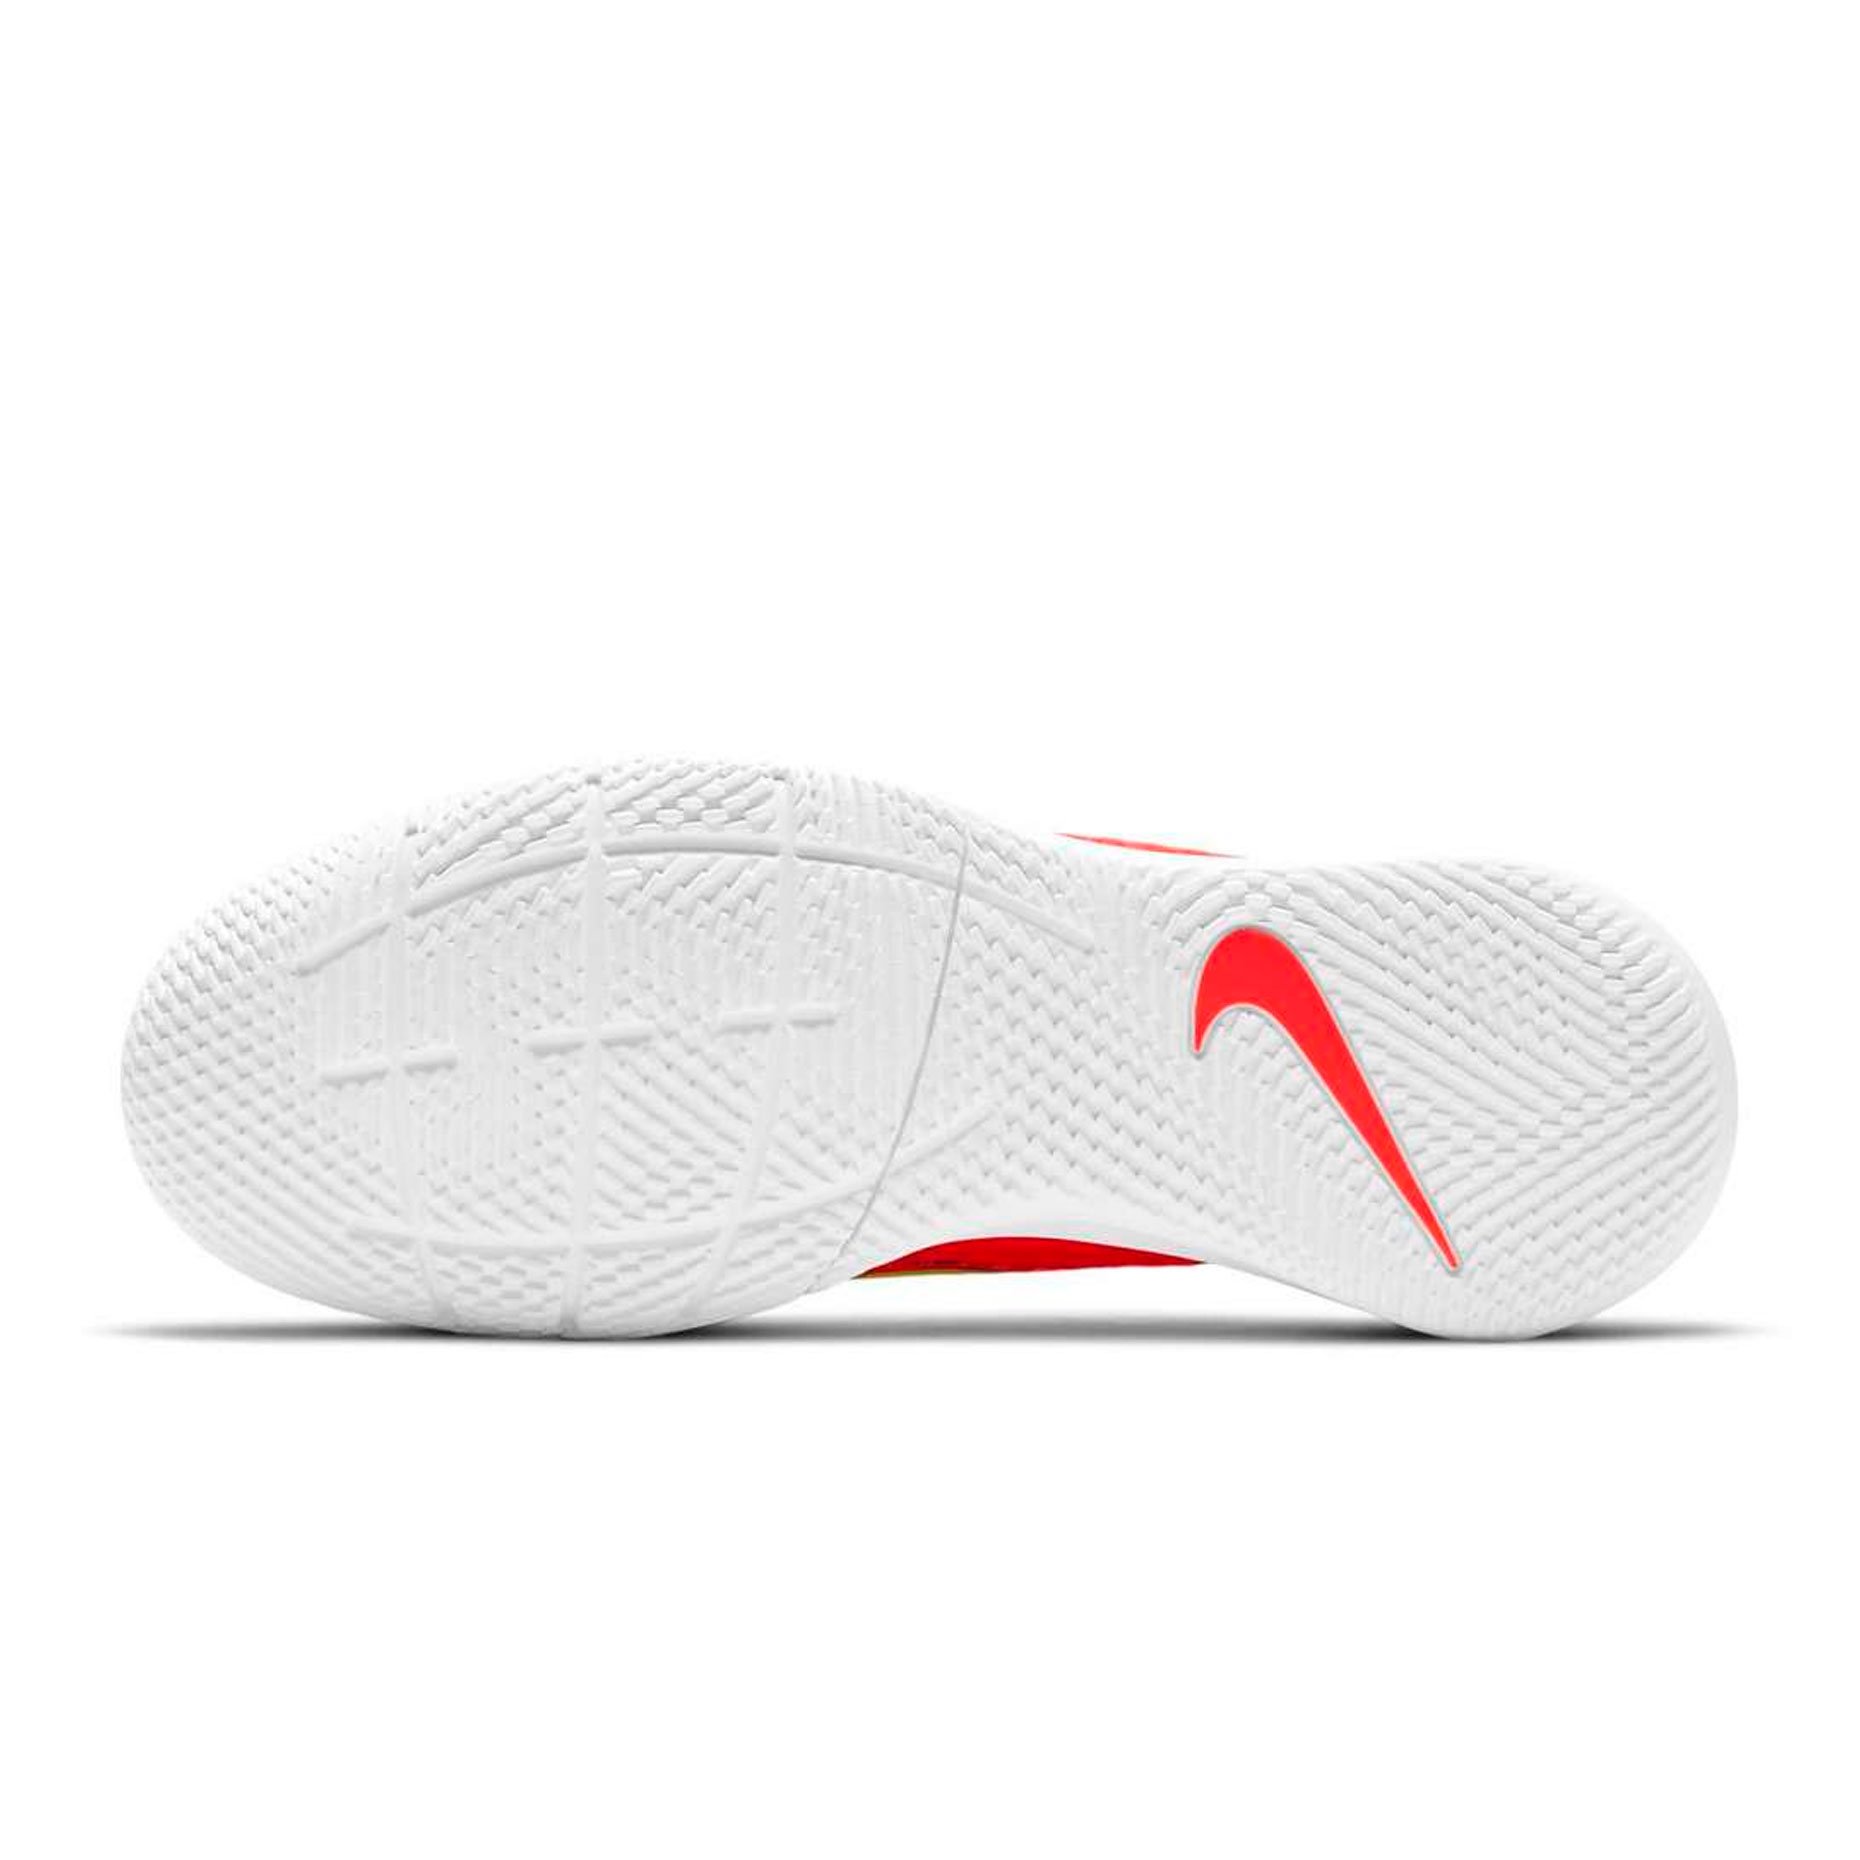 Игровая обувь для зала детская Nike Mercurial Vapor 14 Academy IC